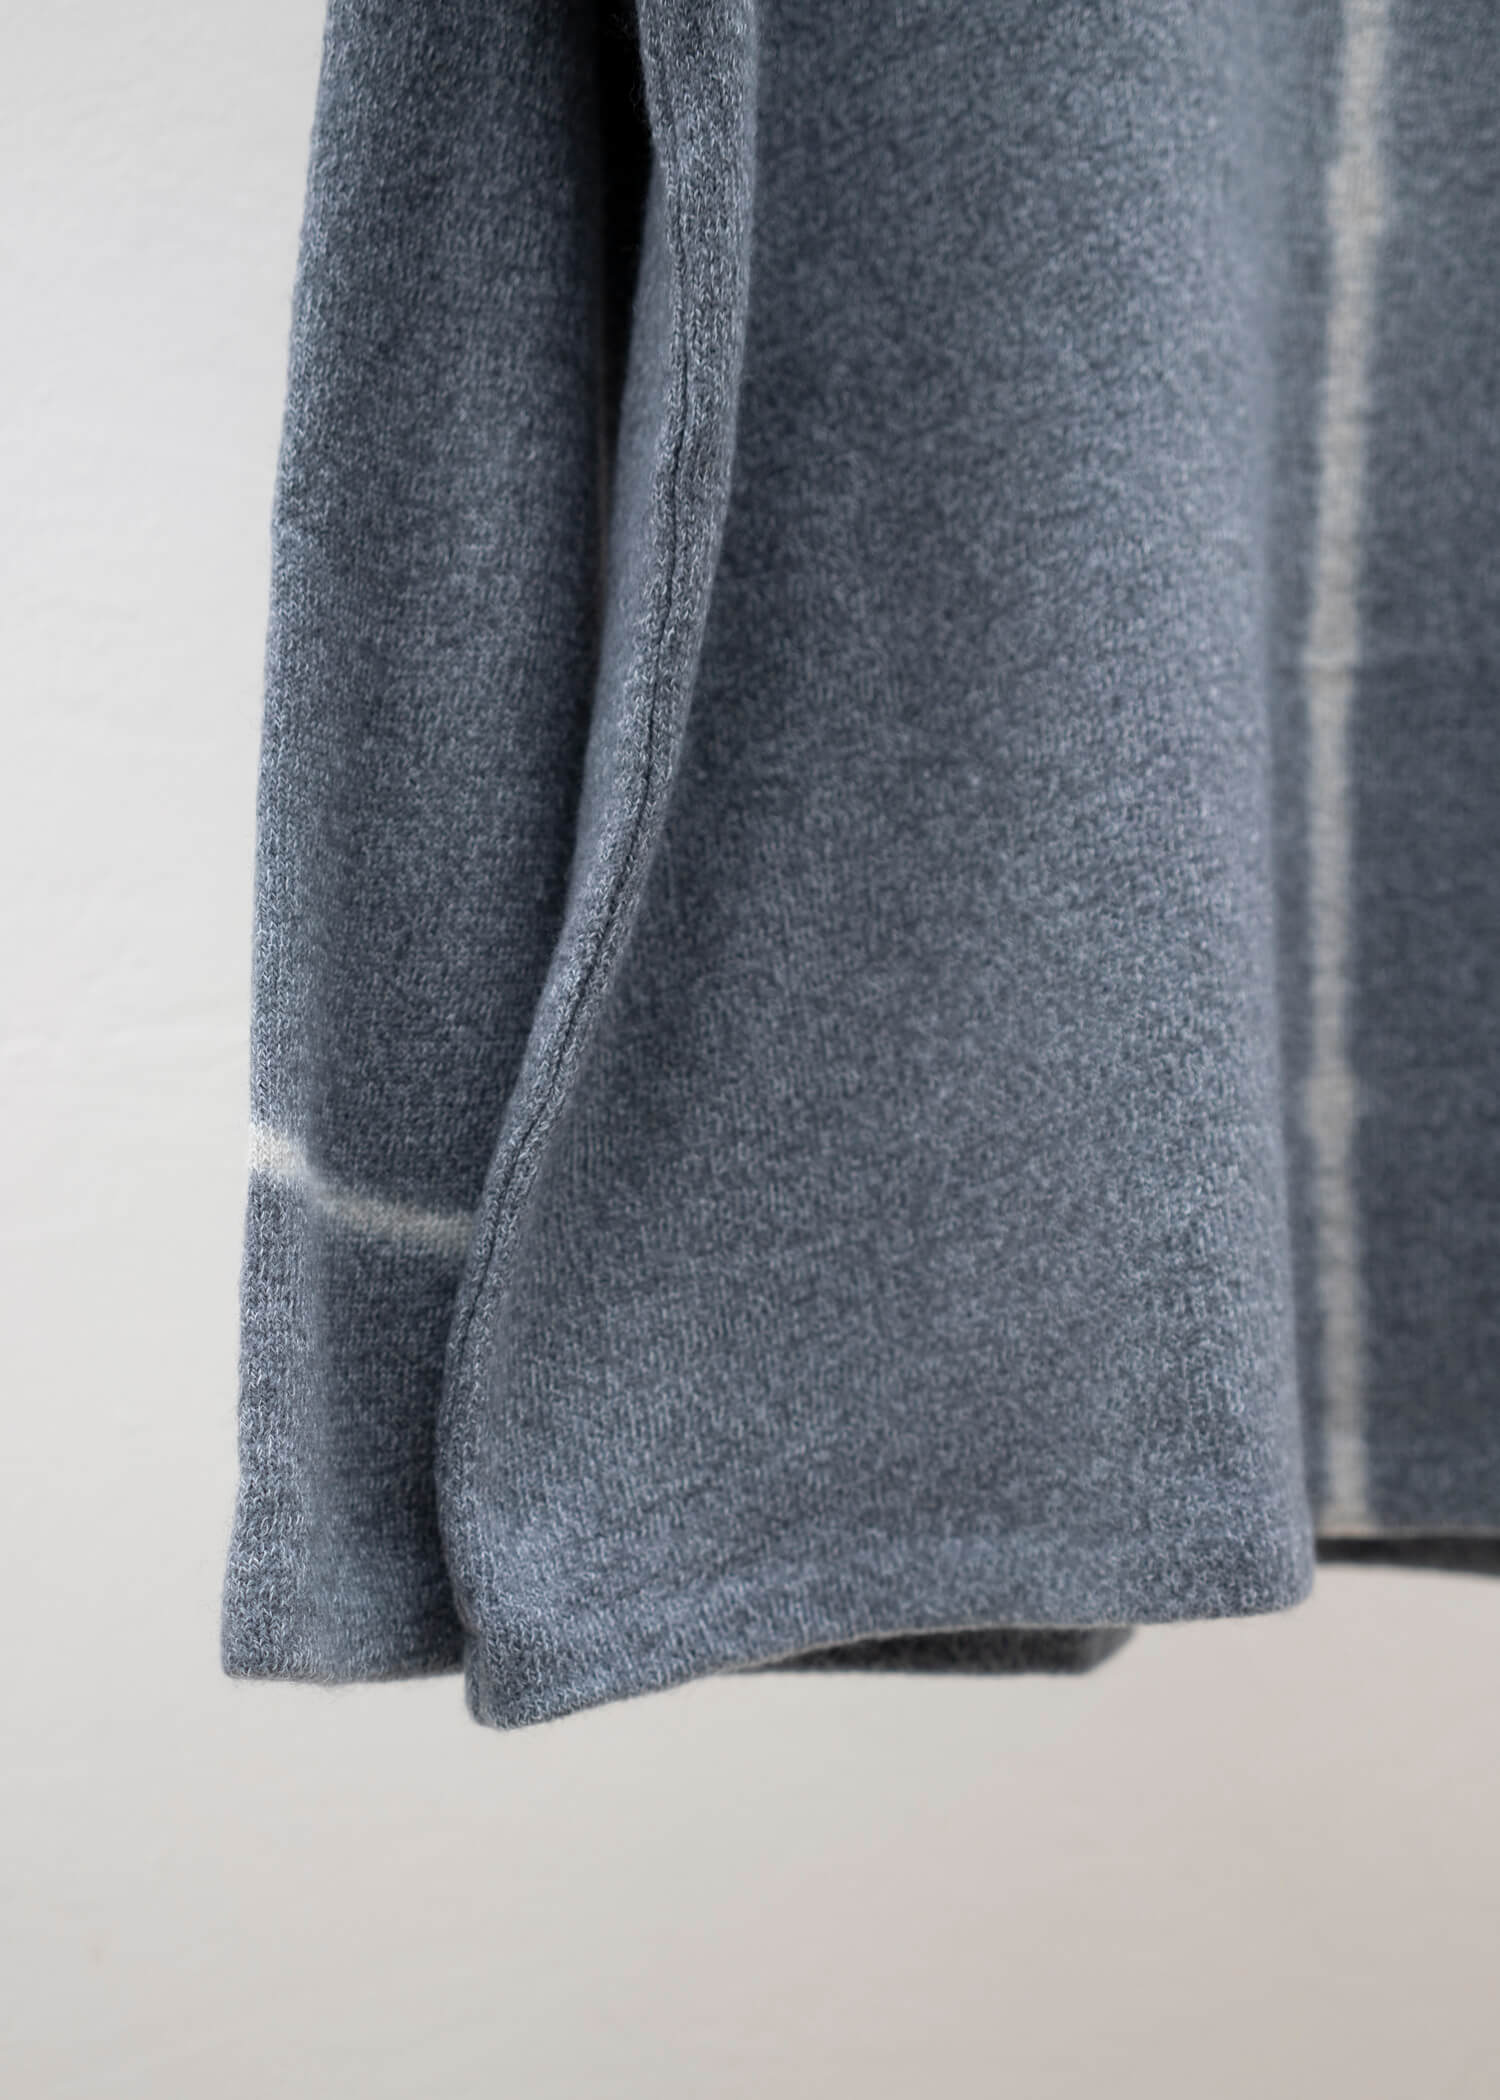 SUZUSAN Wool Cotton Jersey Crew Neck Pullover Grey - Light Grey